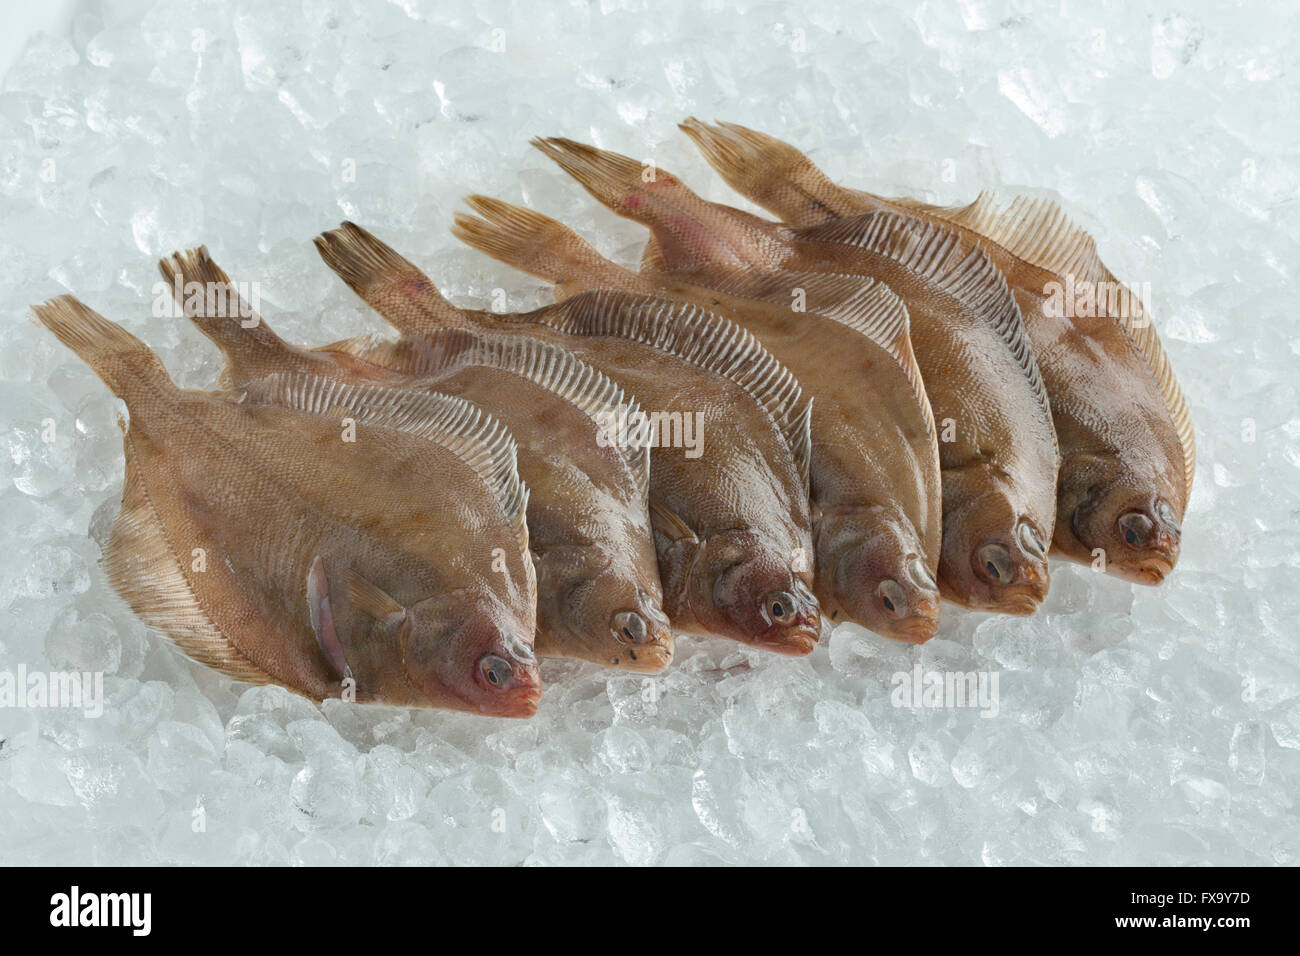 La limanda peces fresca cruda sobre hielo Foto de stock